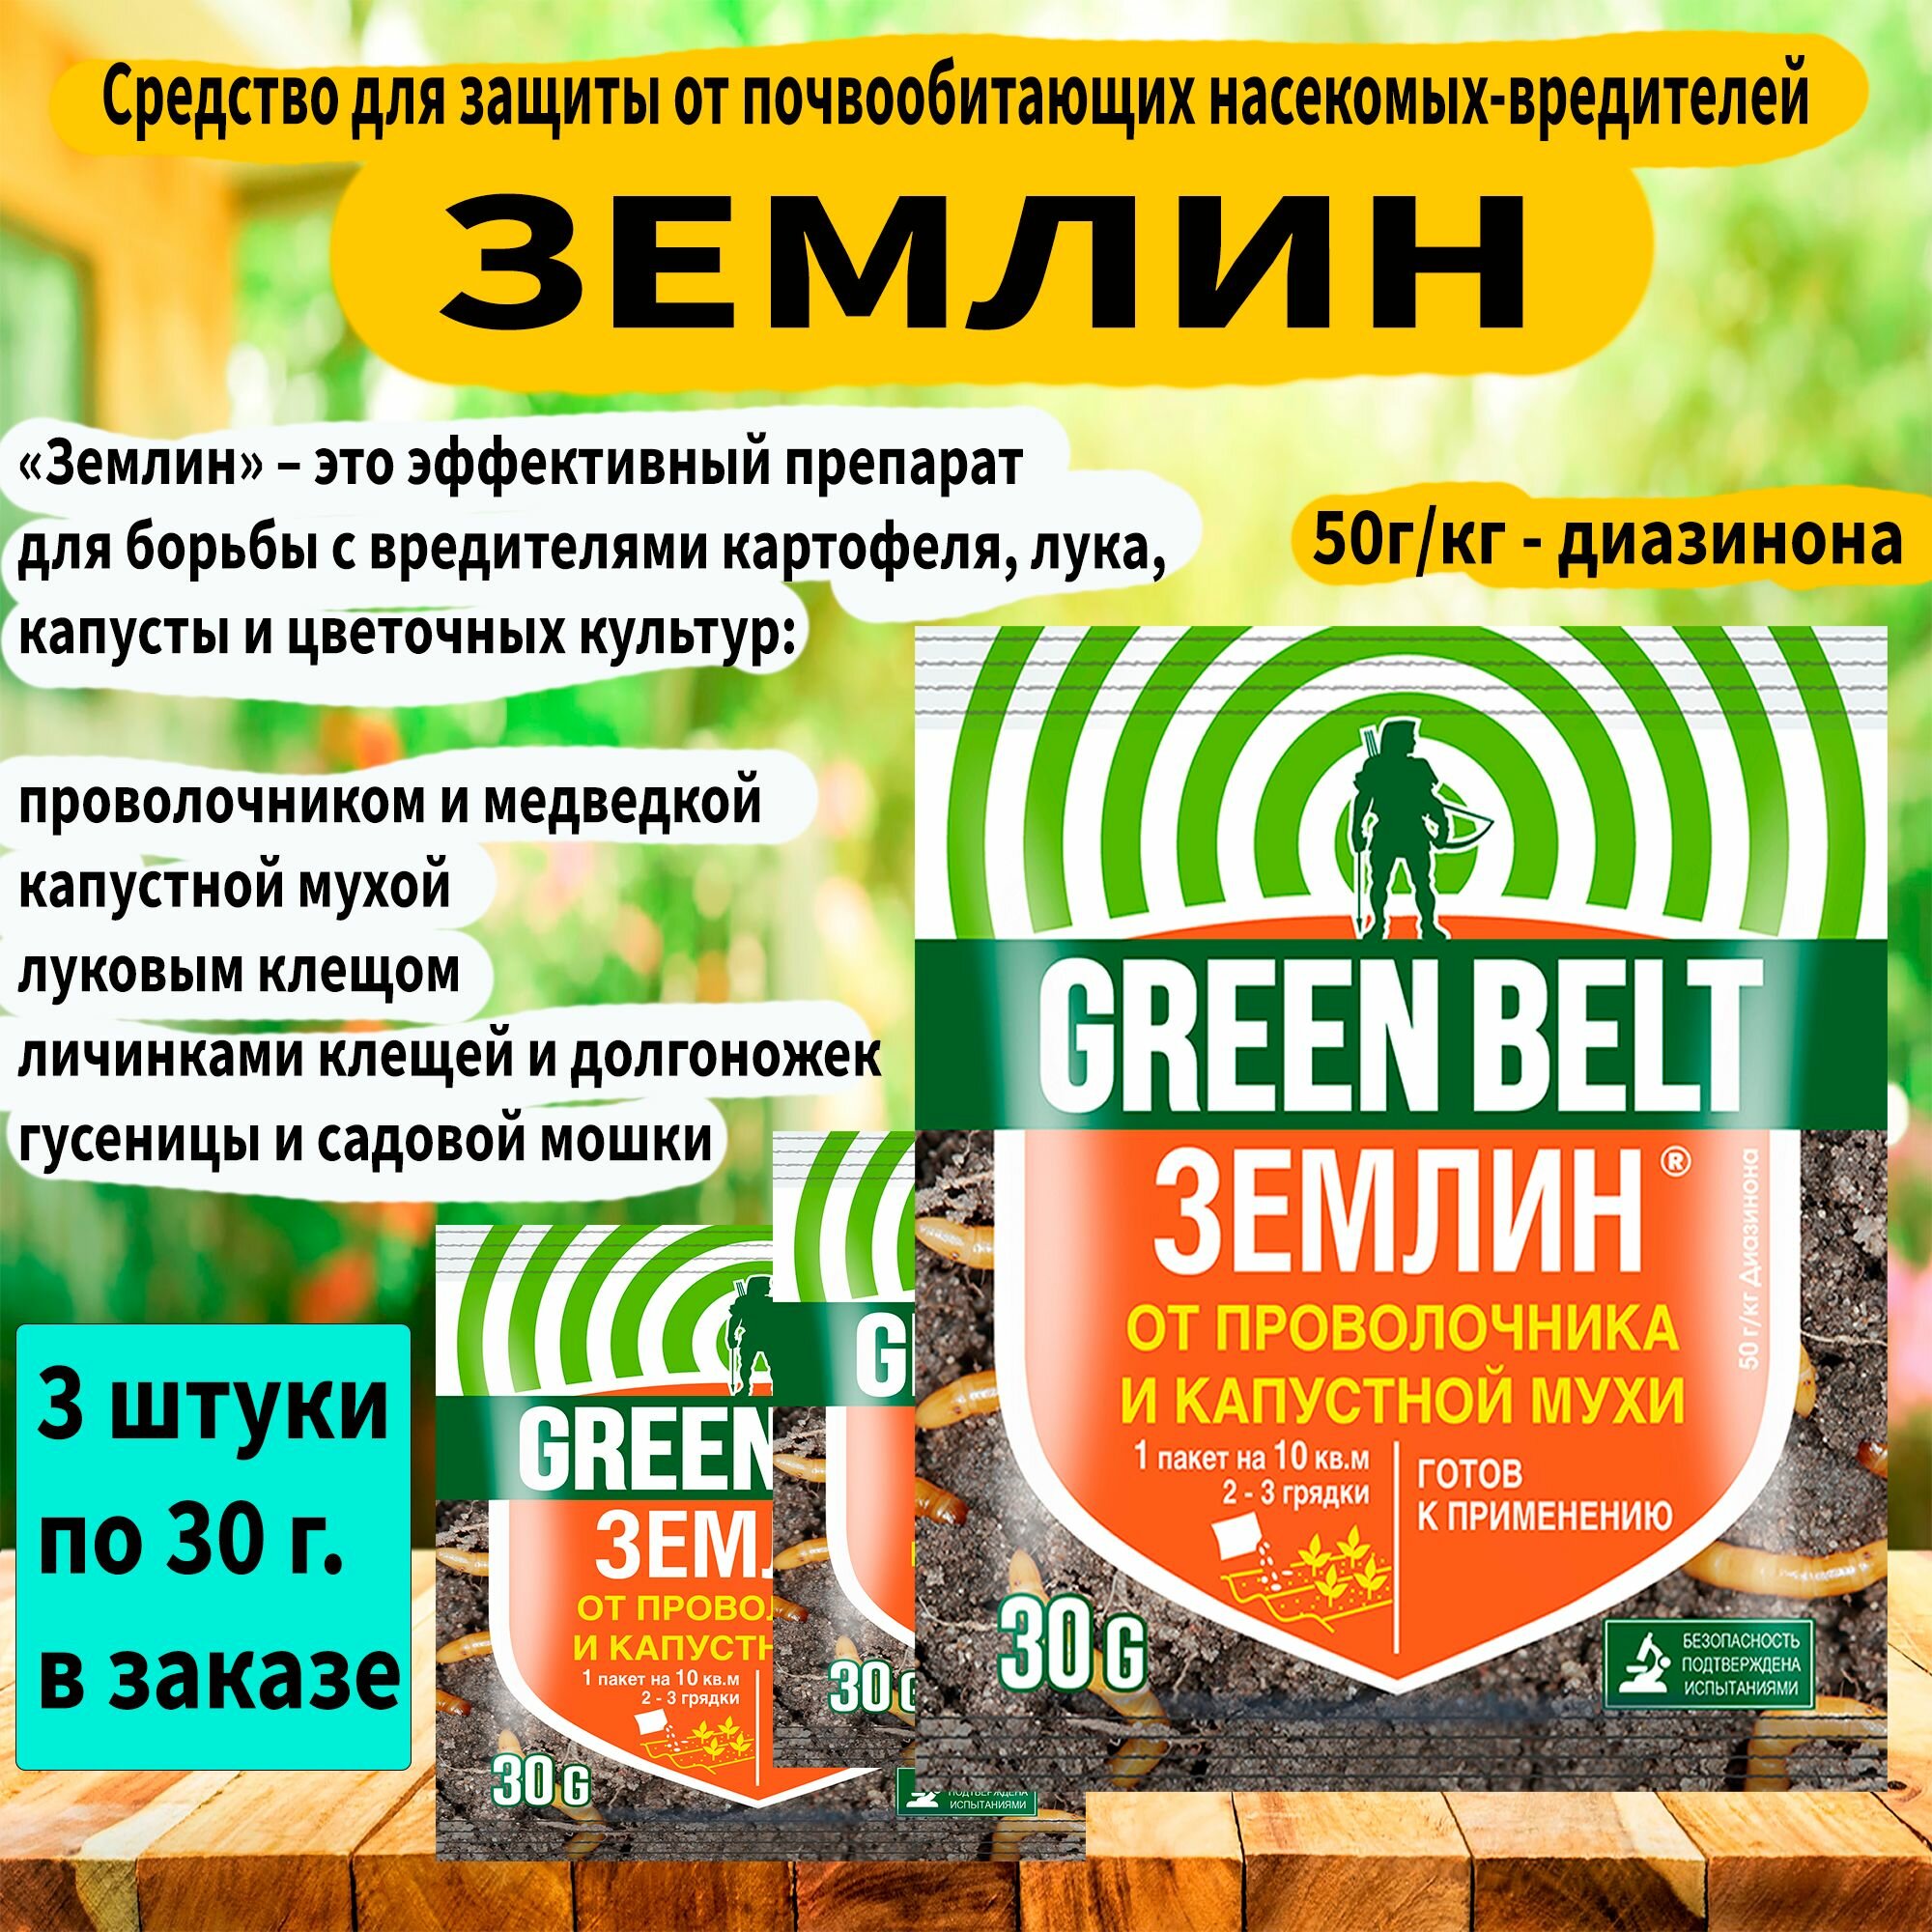 Средство для борьбы от проволочника, луковой и капустной мухи землин, Г(гранулы) 30 г. 'GREEN BELT' 3 штуки в заказе.